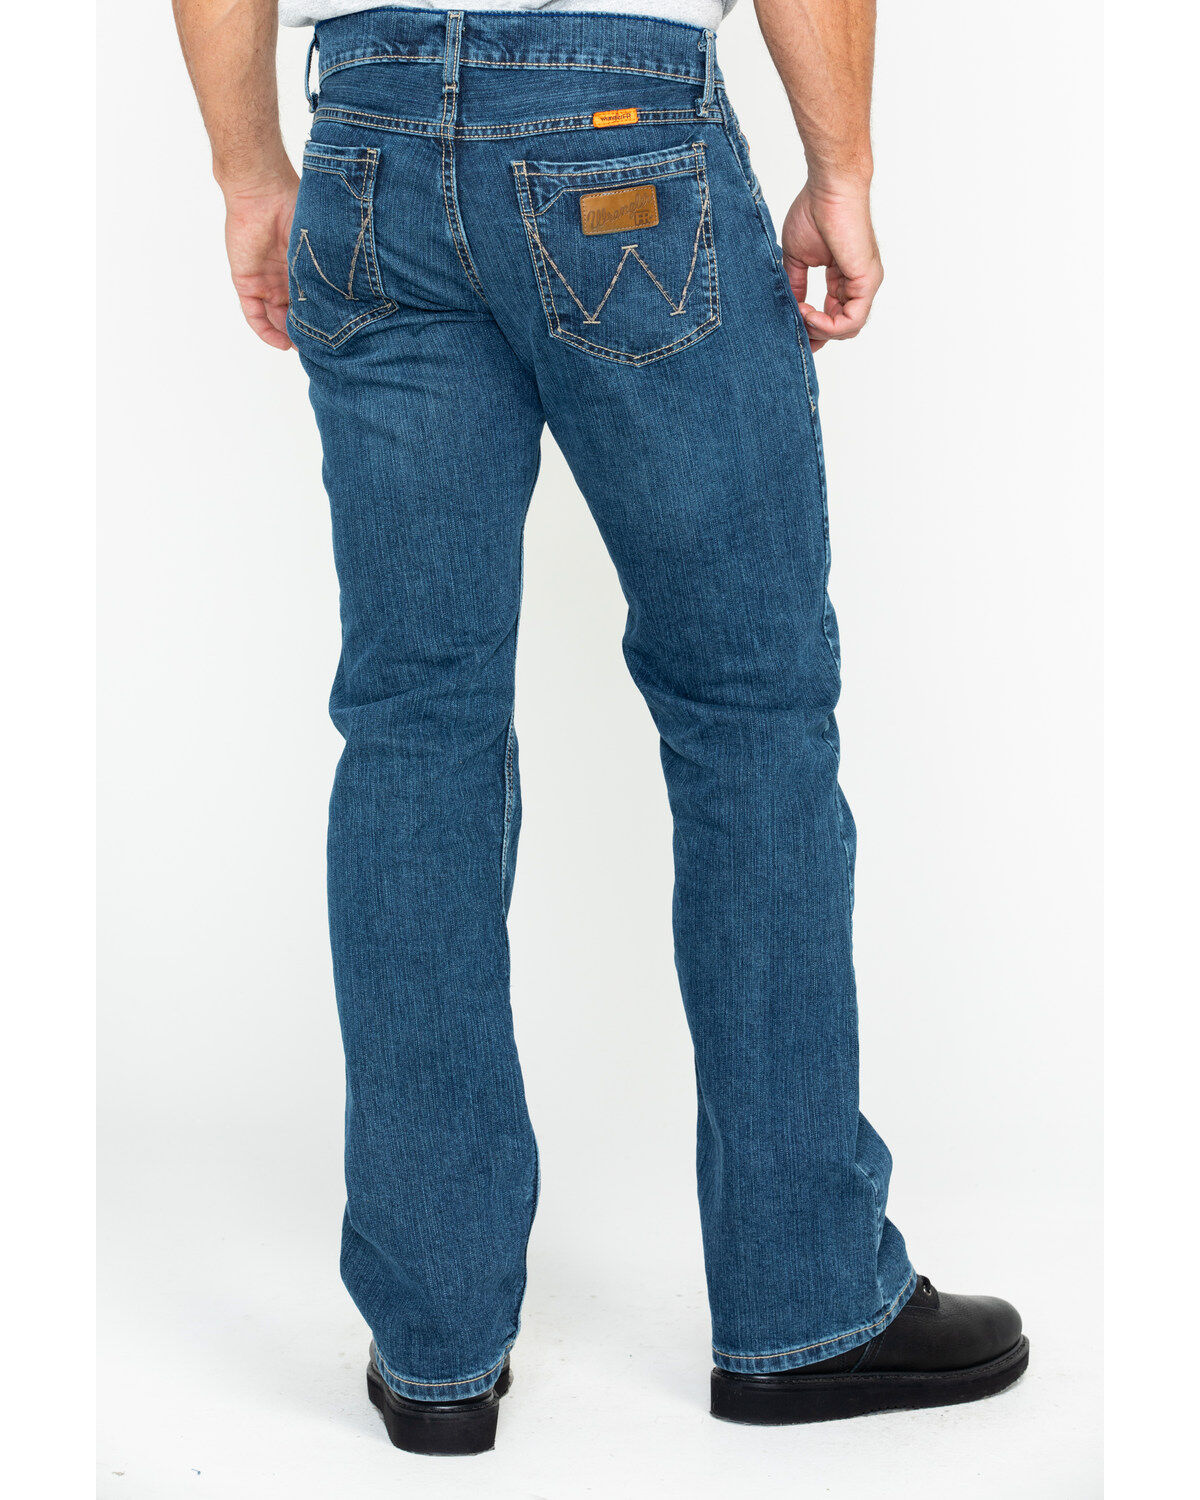 Wrangler Mens Jacksville Jeans 